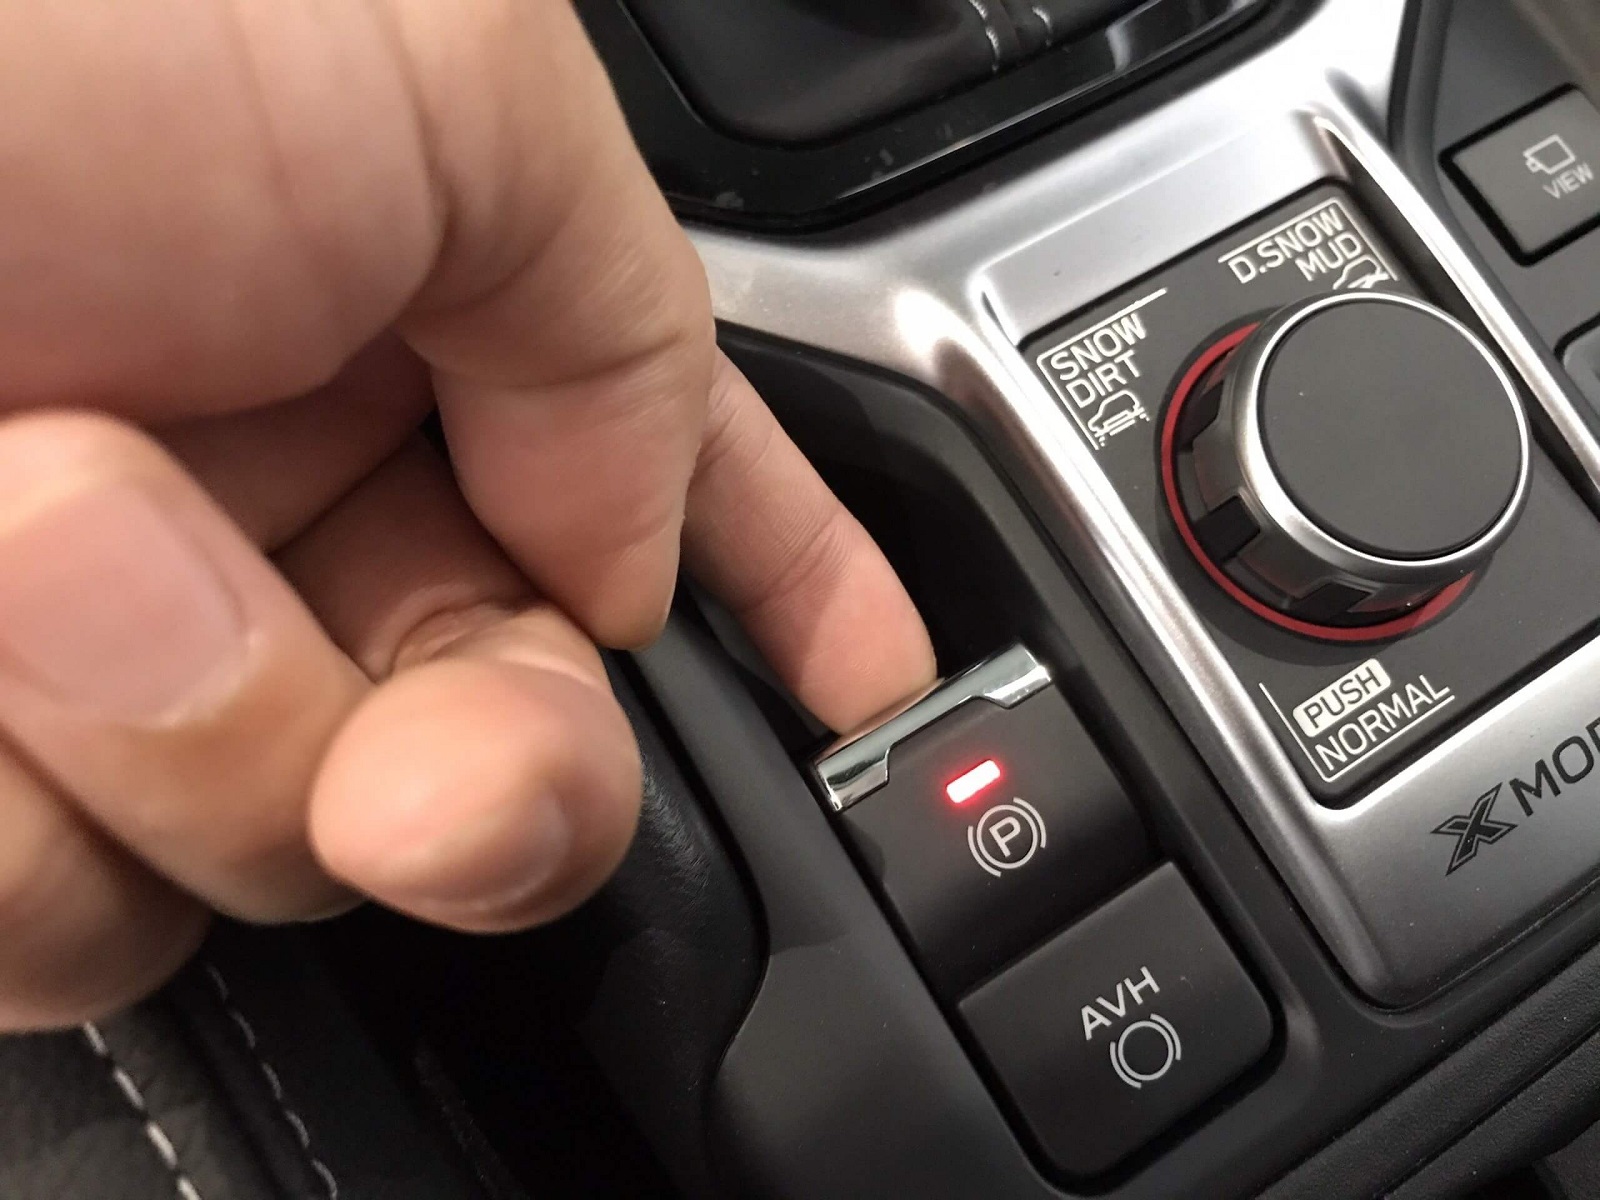 Phanh tay điện tử trên xe ô tô là gì, ưu và nhược điểm cần biết - Ảnh 3.